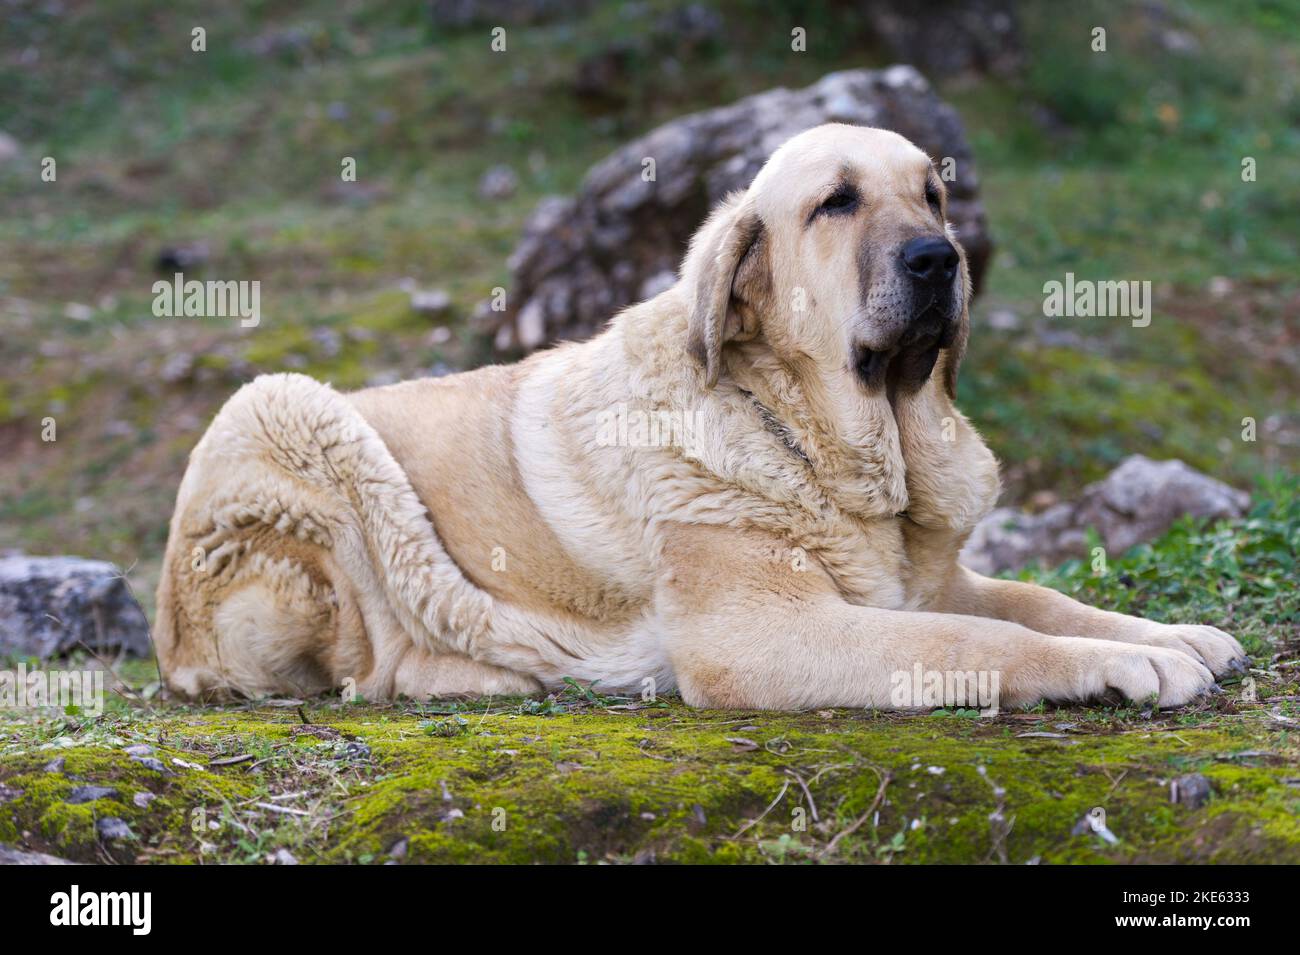 Spanischer Mastiff reinrassig Hund mit jungen Fellfarbe auf dem Gras liegend Stockfoto